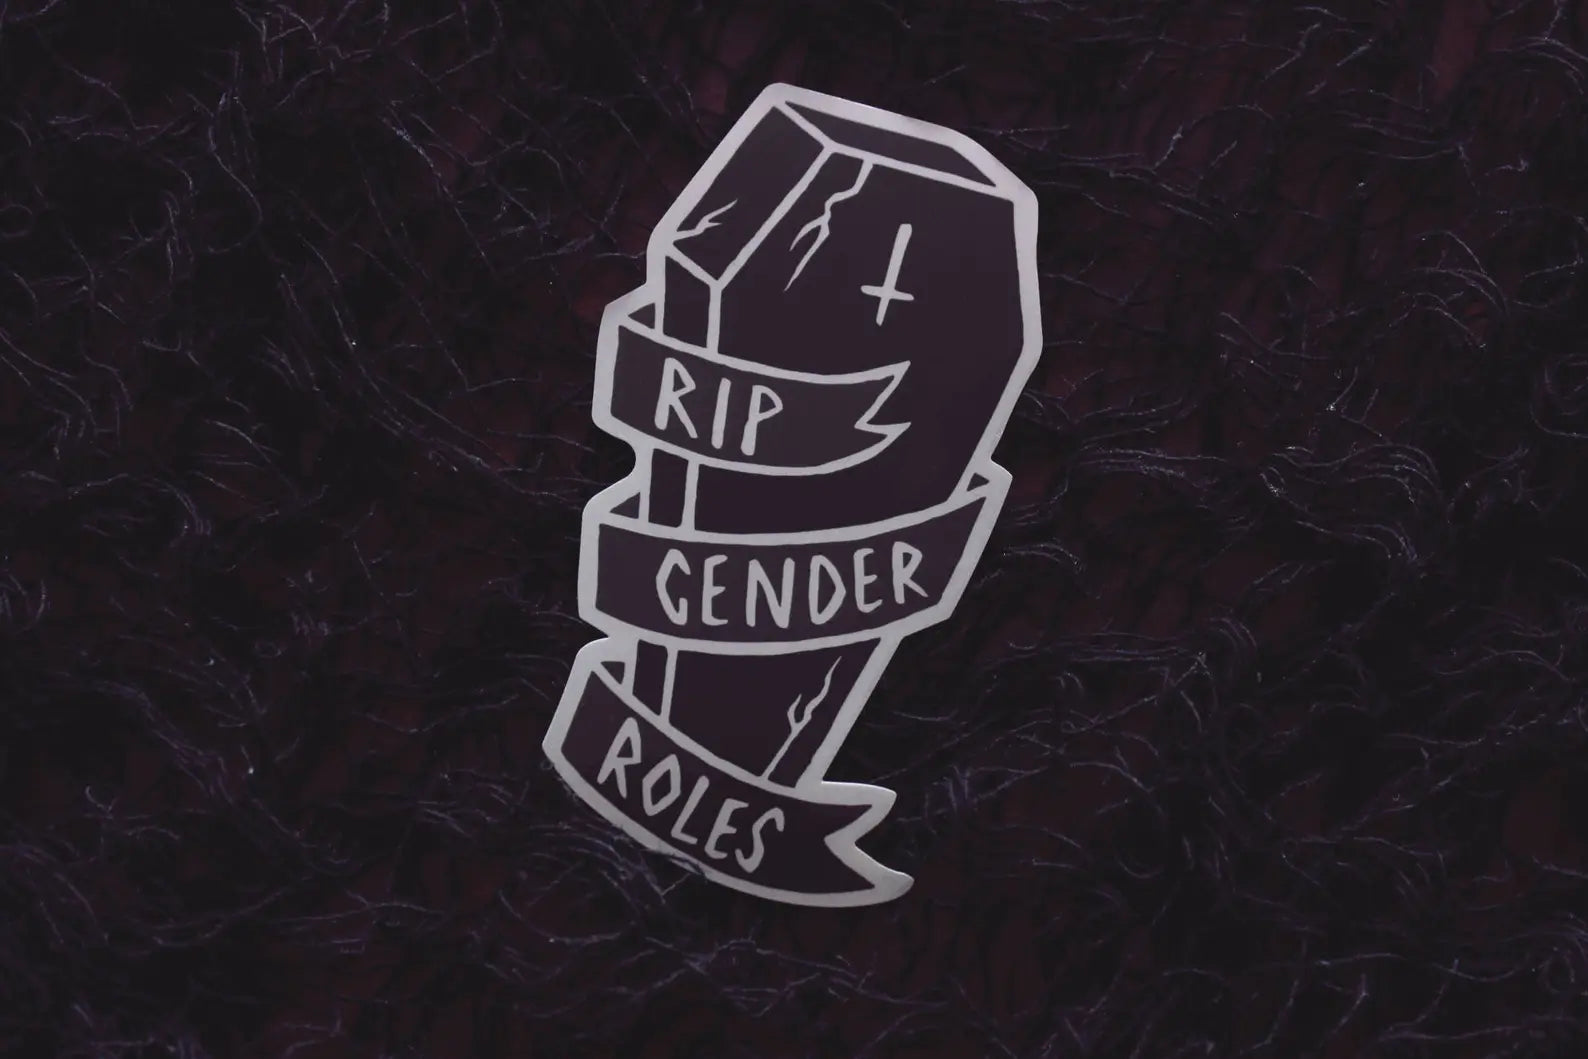 RIP gender roles sticker